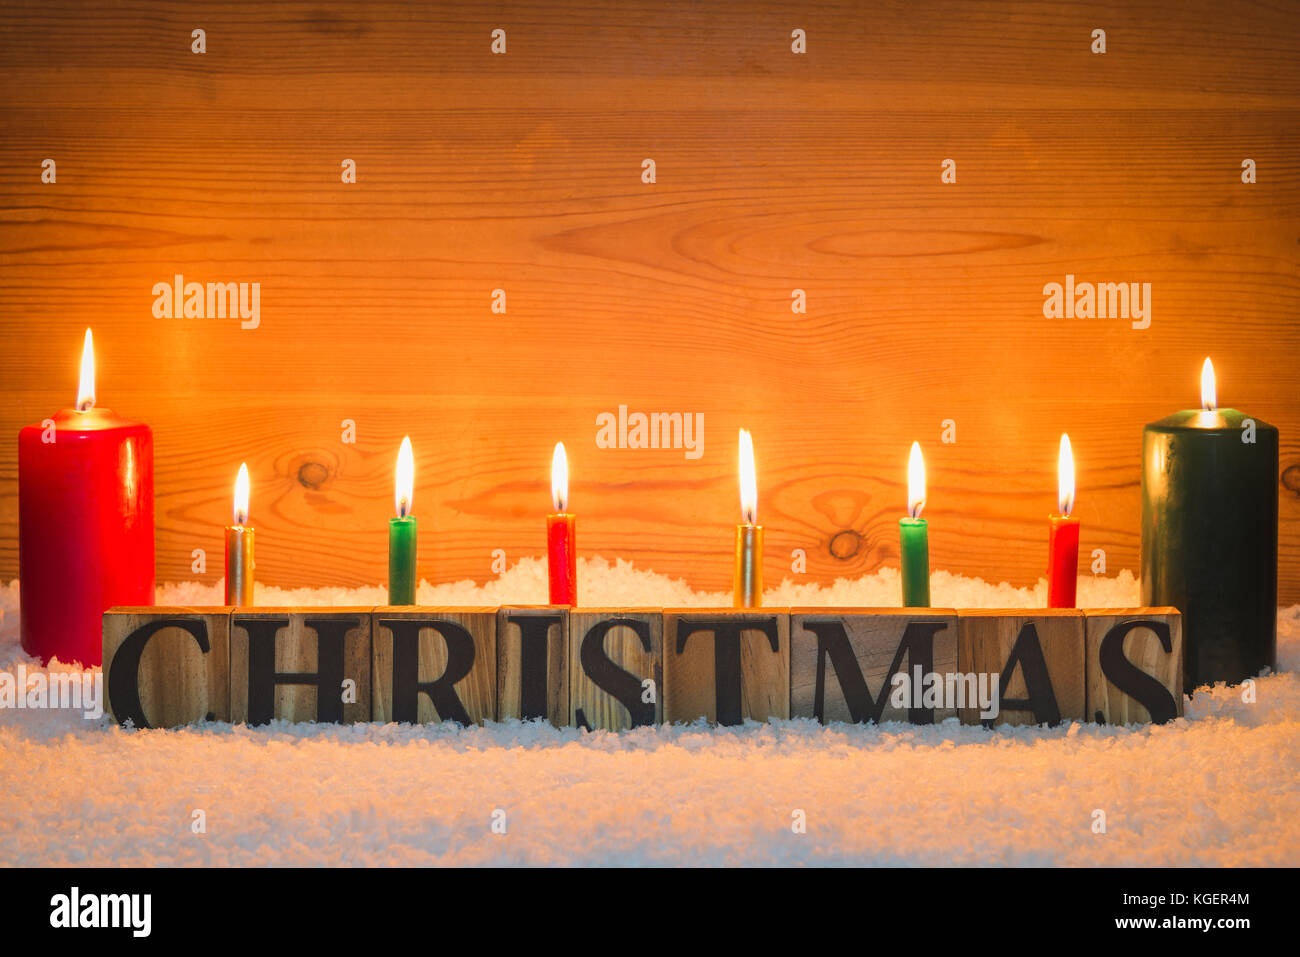 La parola Natale fatti da lettere di legno di neve artificiale con candele accese e un background in legno. Foto Stock